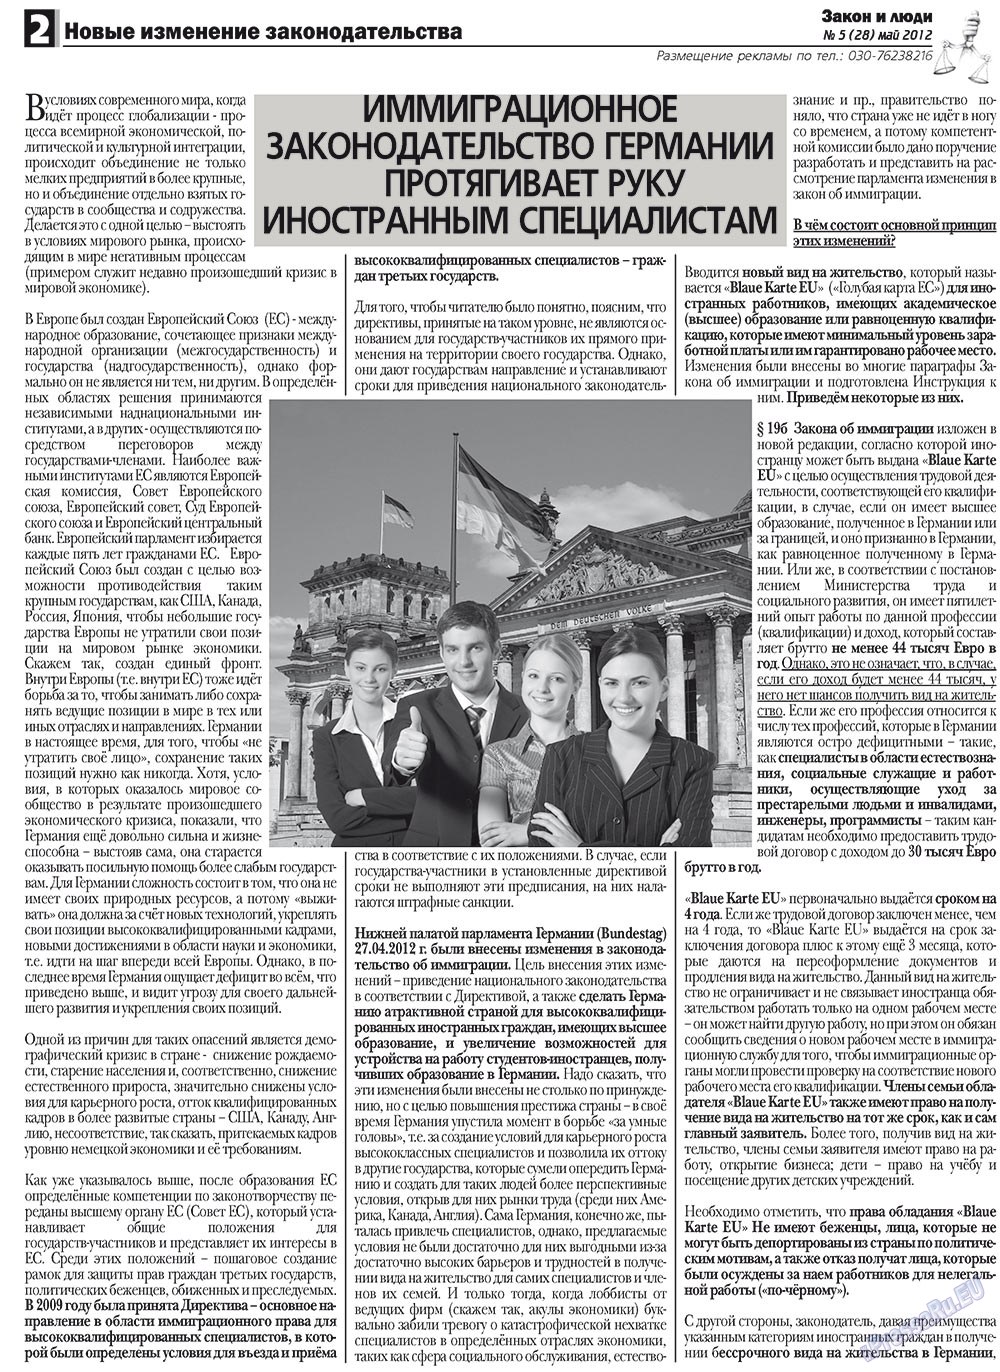 Закон и люди, газета. 2012 №5 стр.2